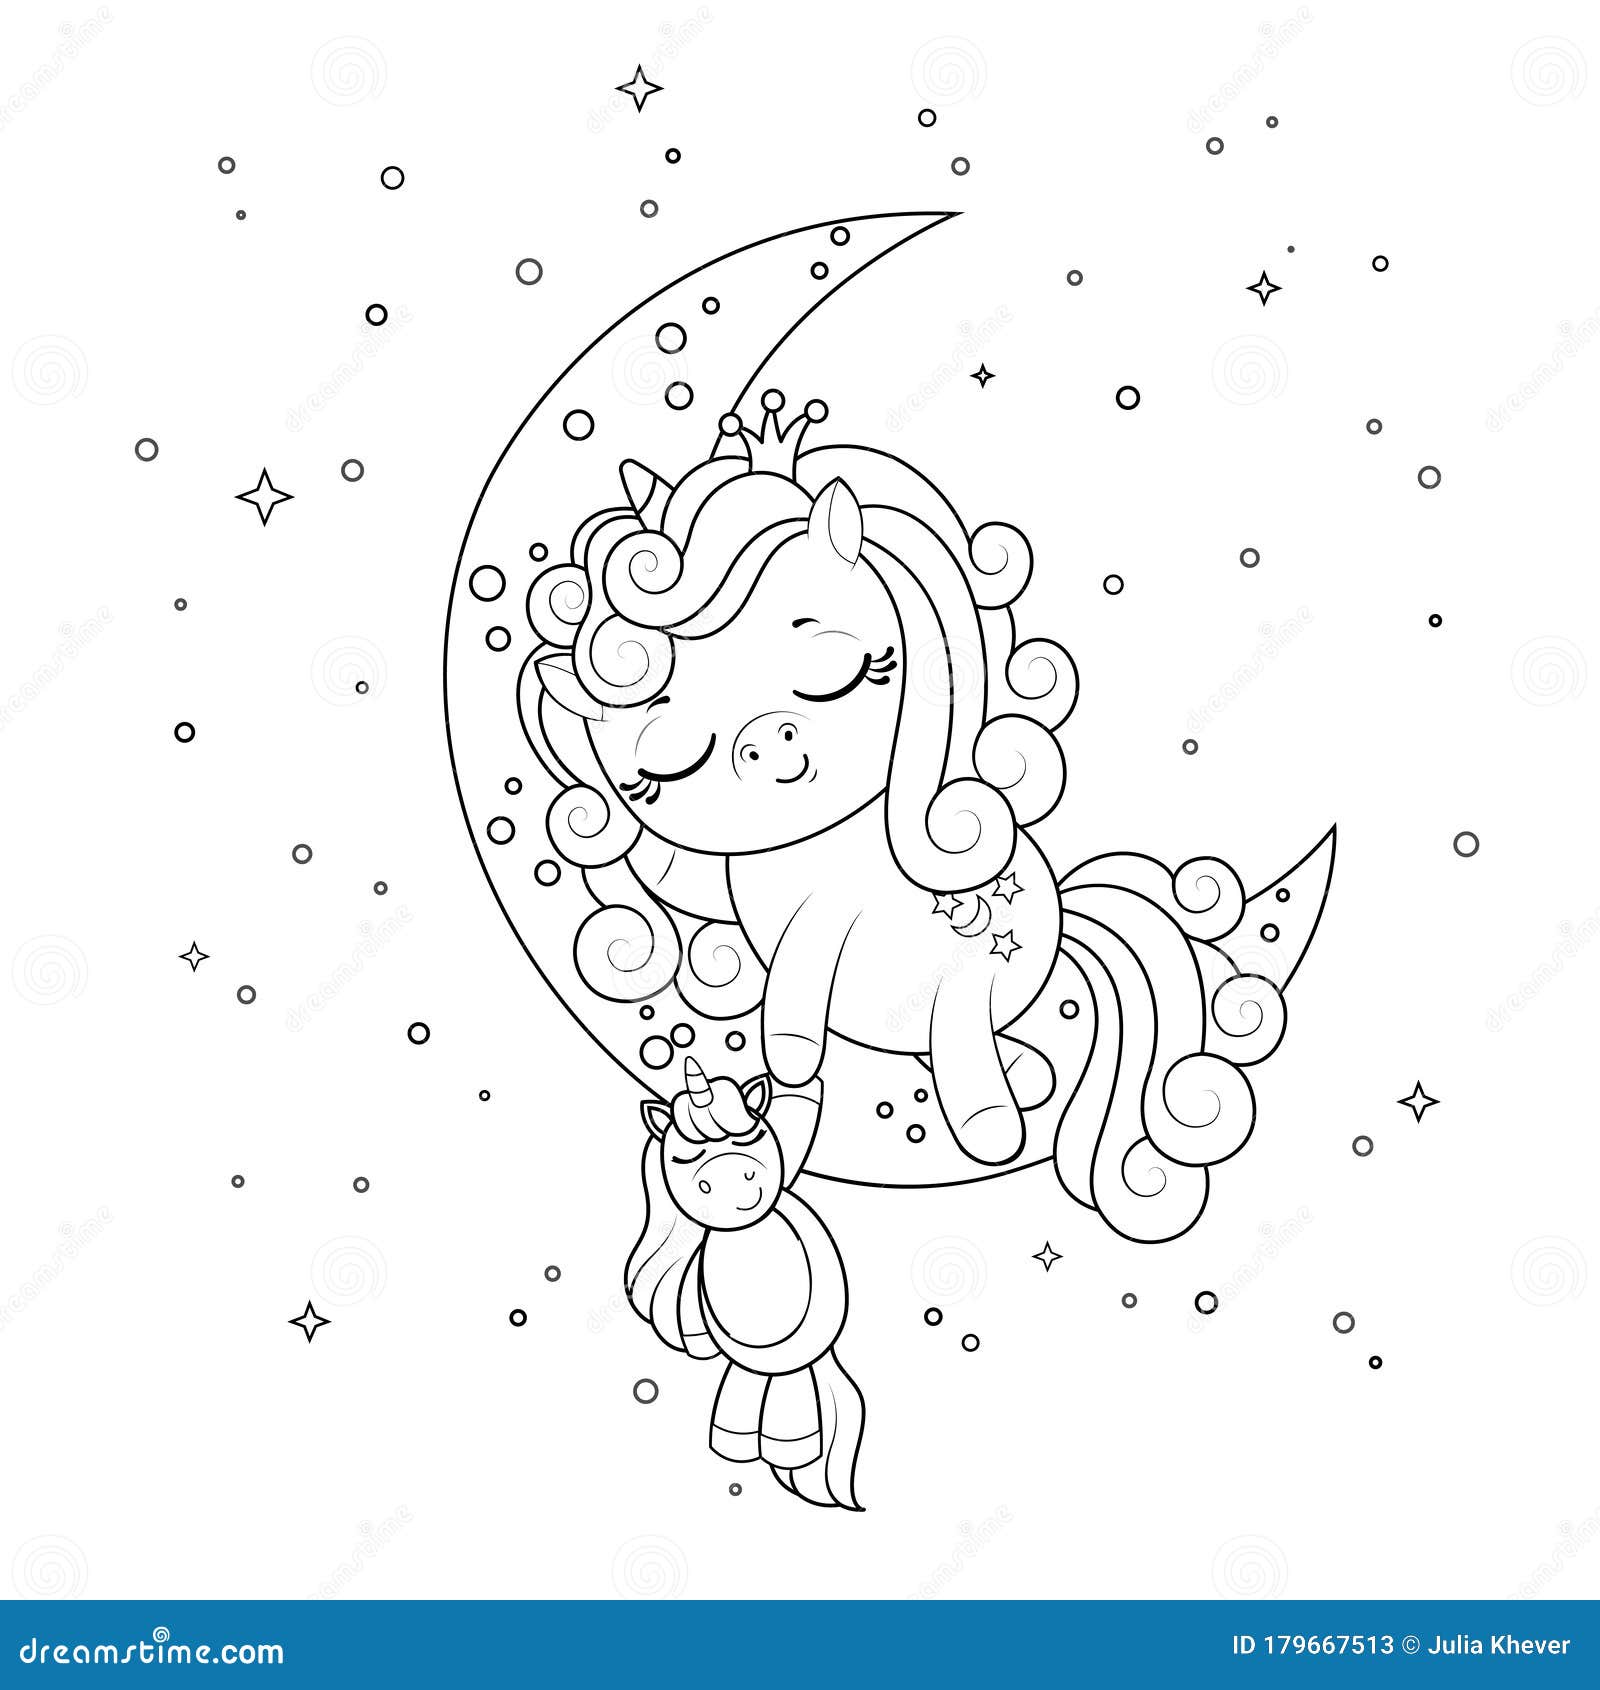 Desenho De Garota Kawaii Páginas Para Colorir Esboço Contorno On Line Vetor  PNG , Desenho Kawaii, Desenho De Asa, Desenho De Menina Imagem PNG e Vetor  Para Download Gratuito